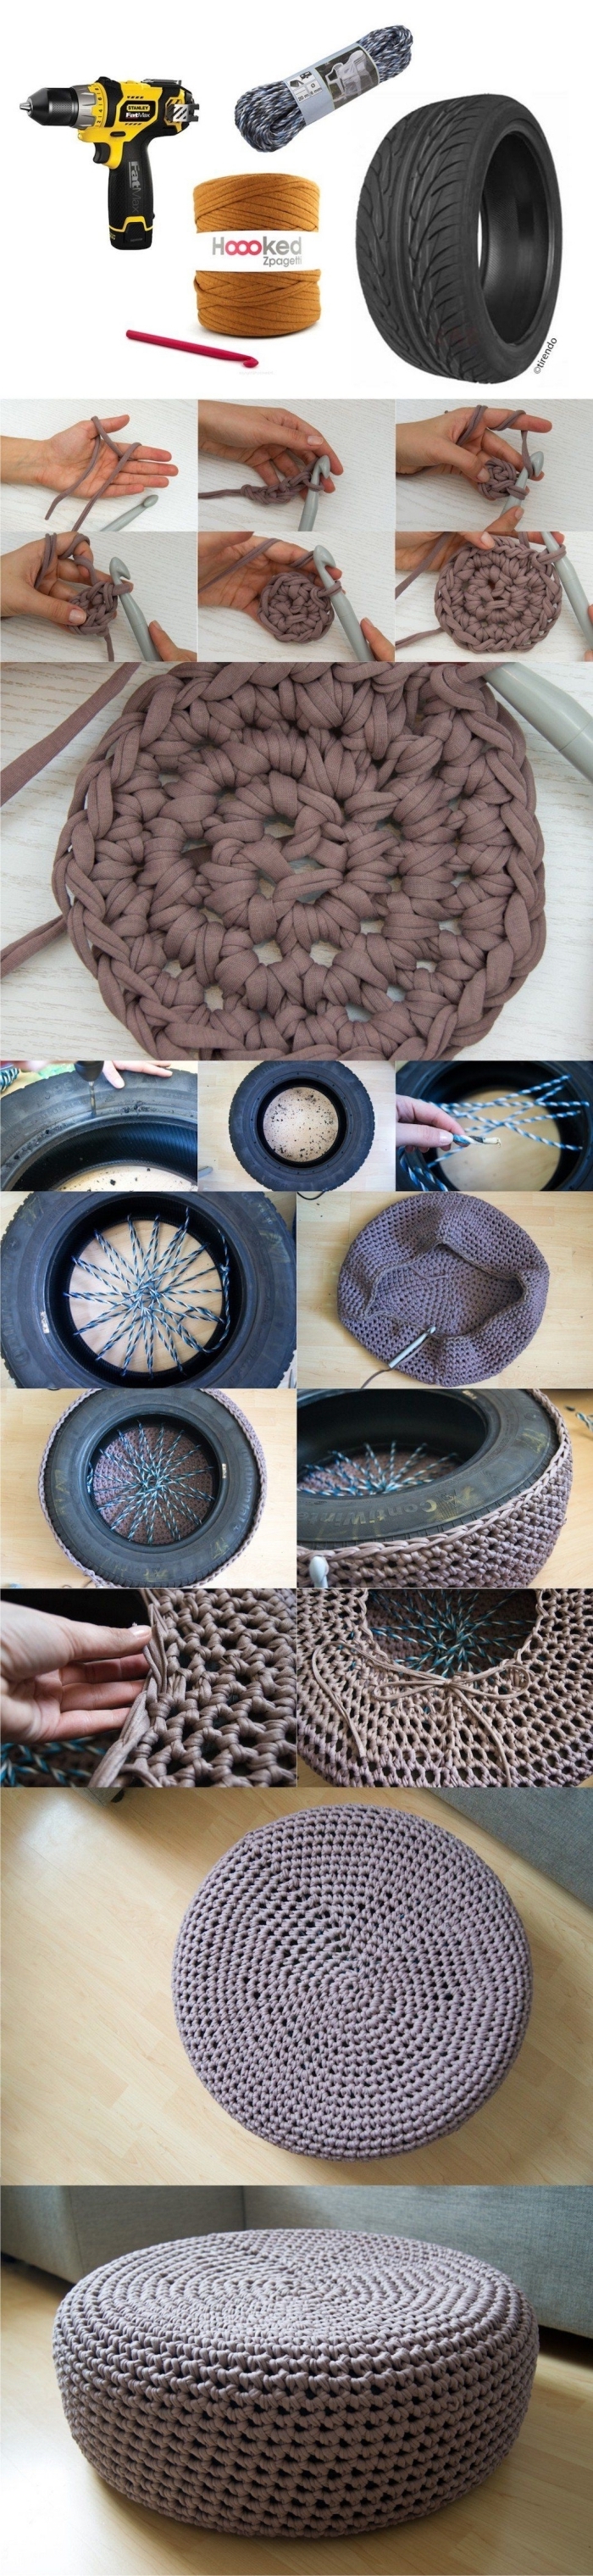 projet créatif facile avec recyclage pneu et technique de crochet, étapes à suivre pour fabriquer un ottoman original en pneu